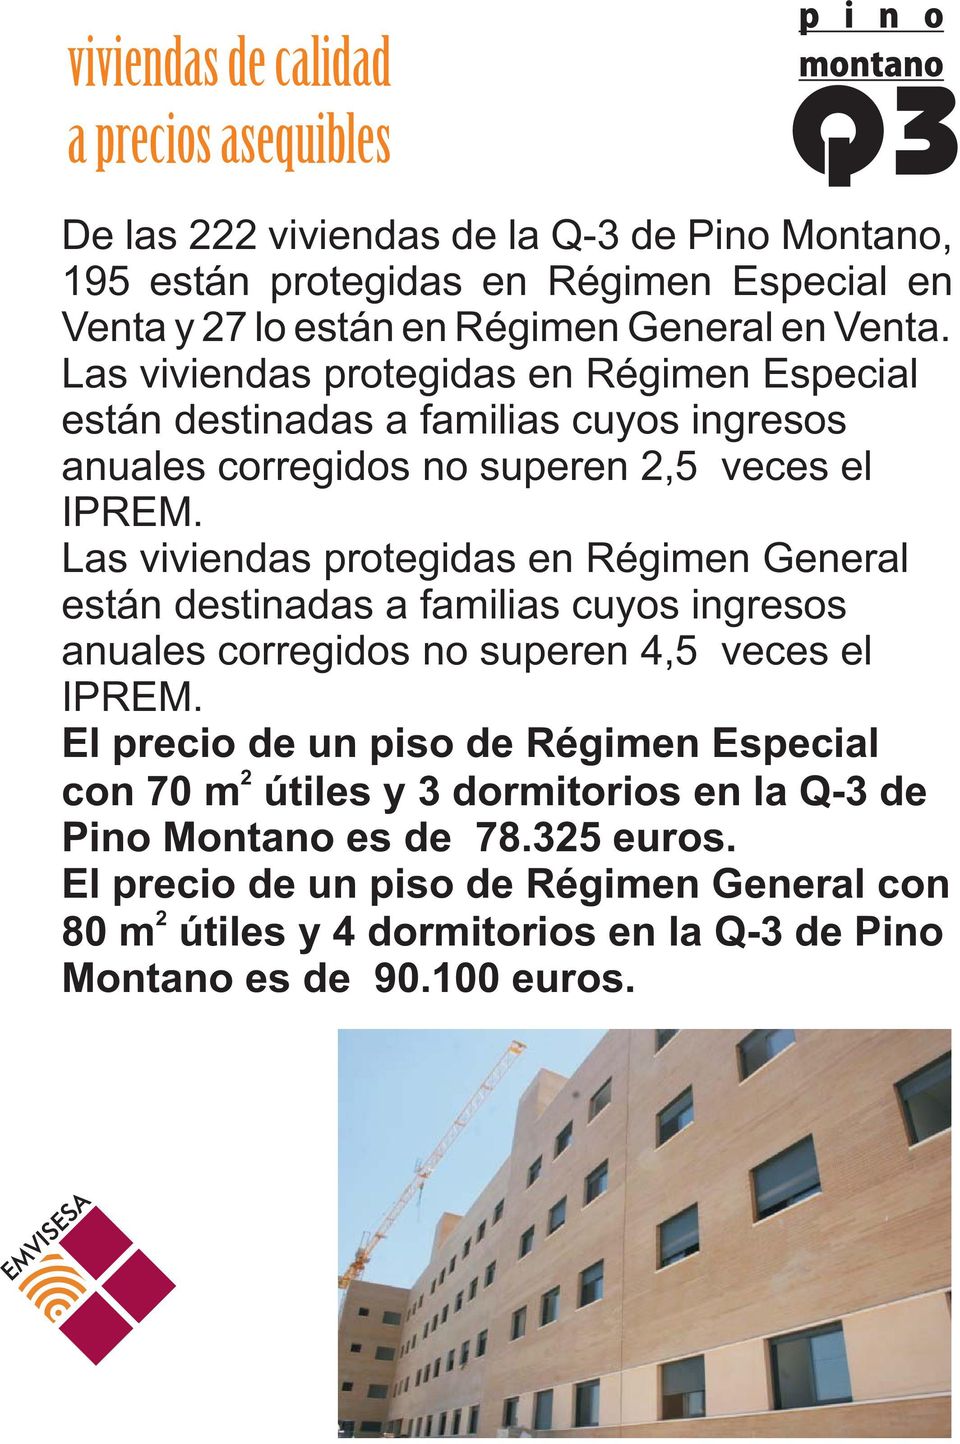 Las viviendas protegidas en Régimen General están destinadas a familias cuyos ingresos anuales corregidos no superen 4,5 veces el IPREM.